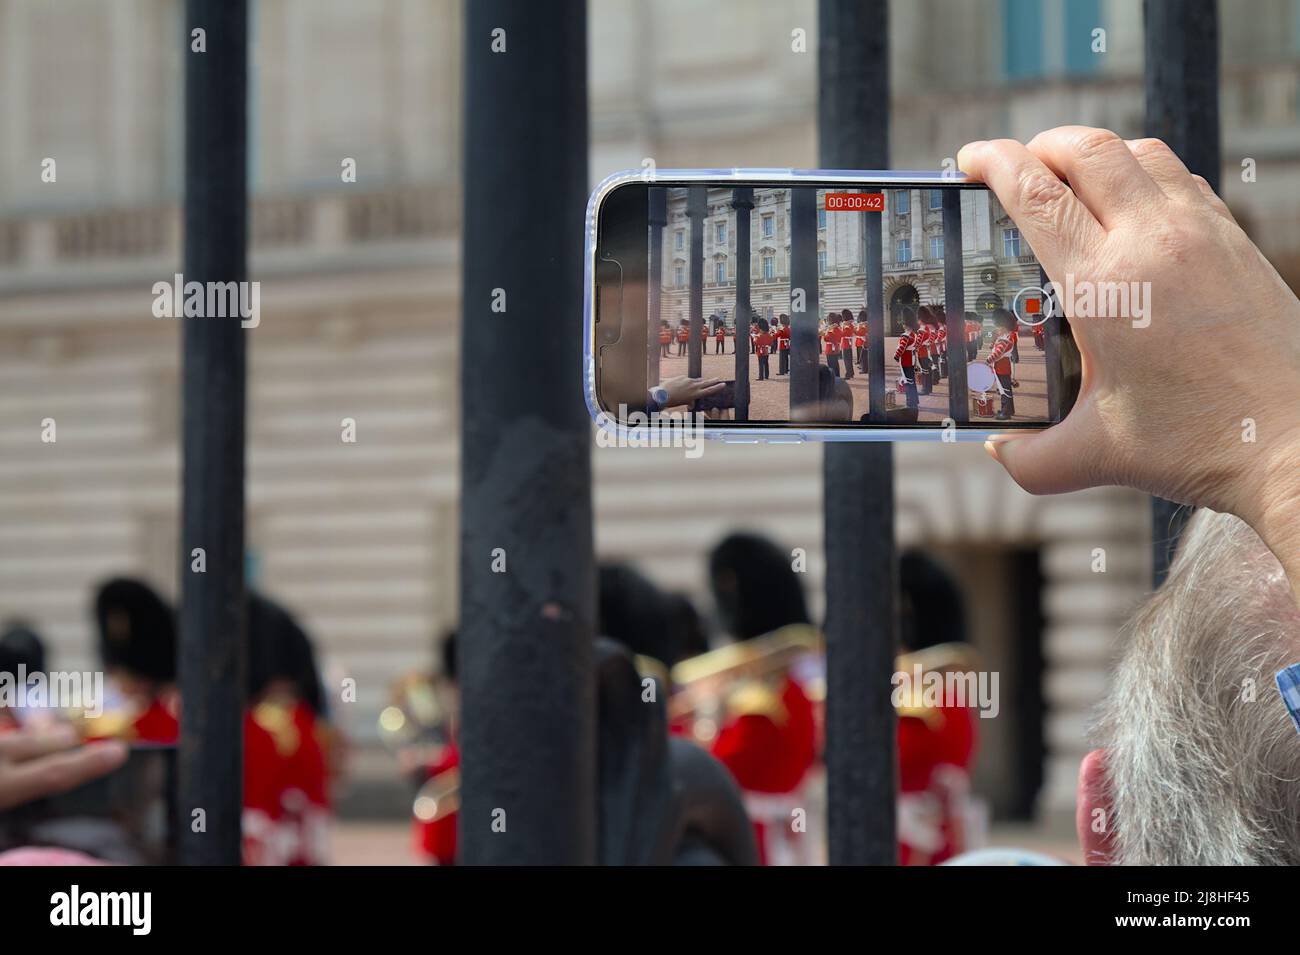 Persona que vídee con un teléfono móvil La Banda Regimental de los Guardias de Granadero durante la Ceremonia de Cambio de Guardia en el Palacio de Buckingham de Londres Foto de stock